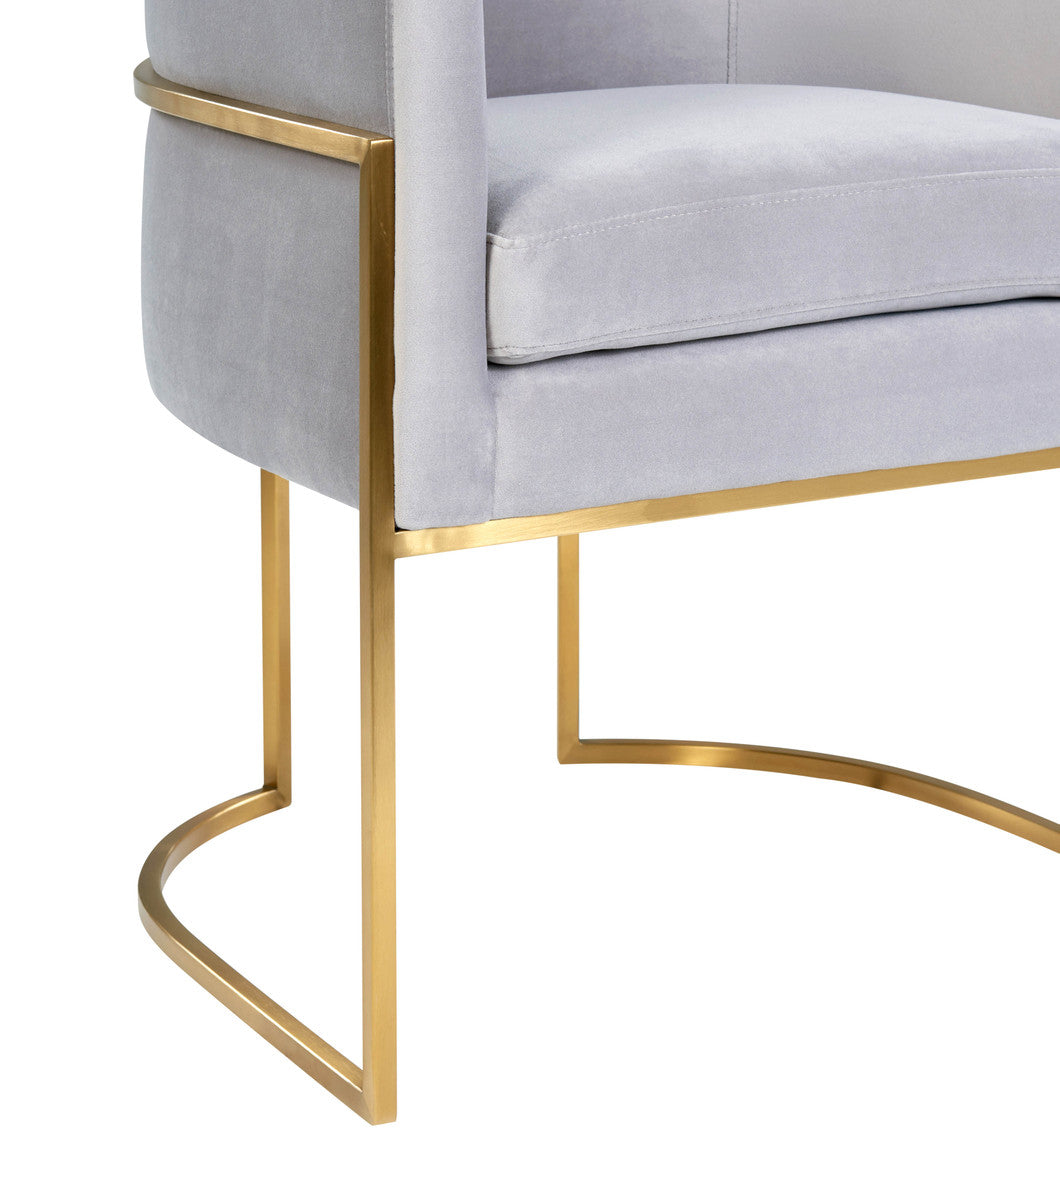 Giselle Velvet Dining Chair By Inspire Me! Home Decor